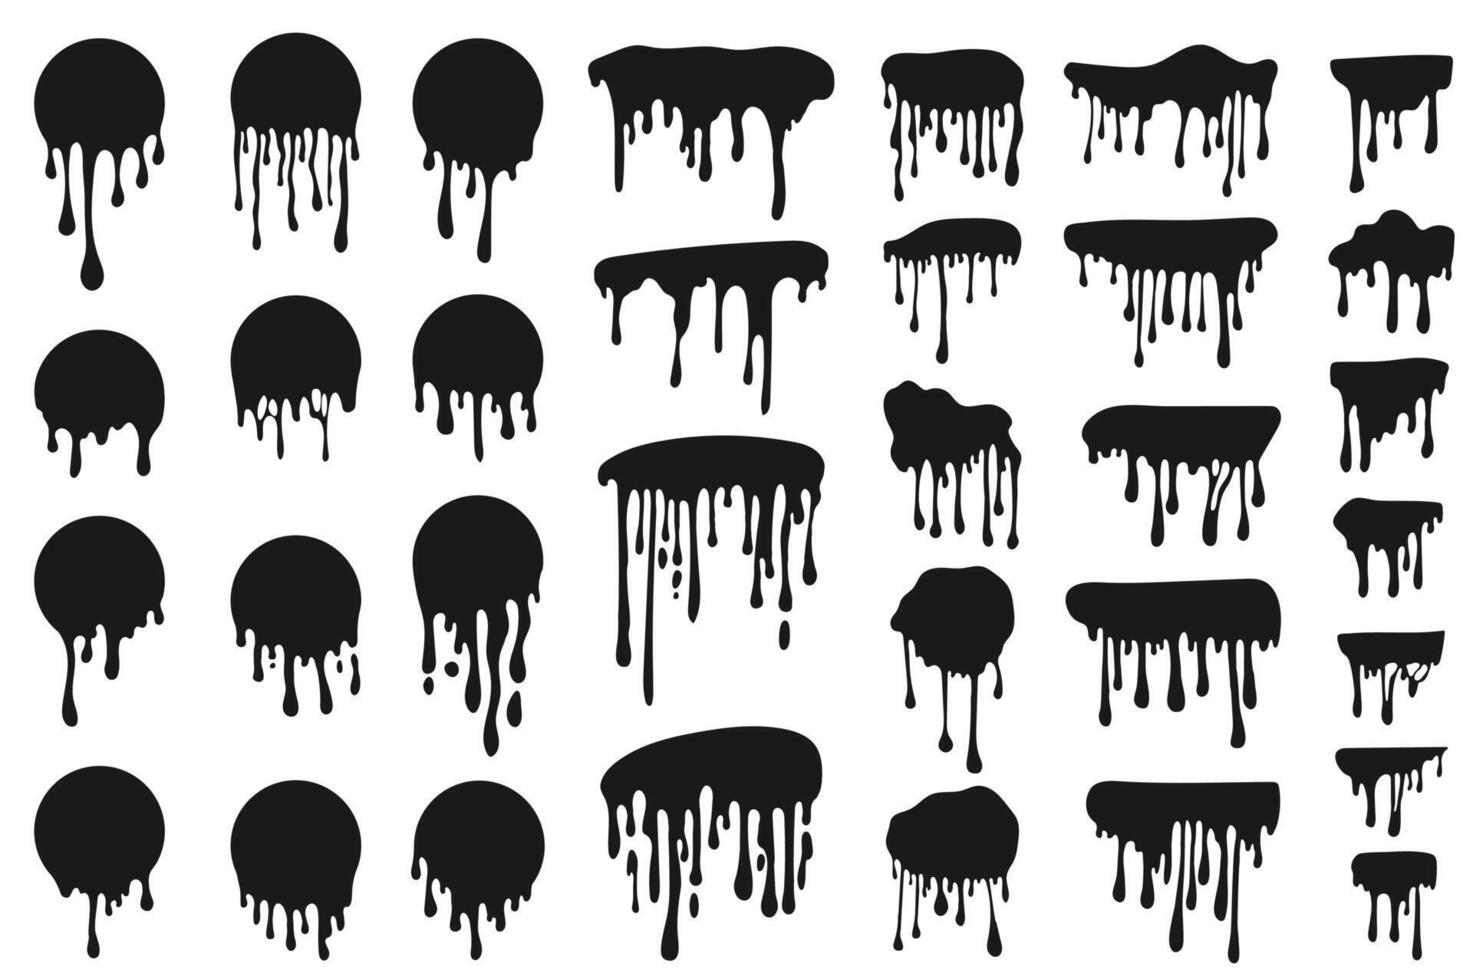 goteo negro tinta conjunto gráfico elementos en plano diseño. haz de diferente lugares con fluido gotas de redondo forma y frontera plantillas, líquido pintar manchas vector ilustración aislado objetos